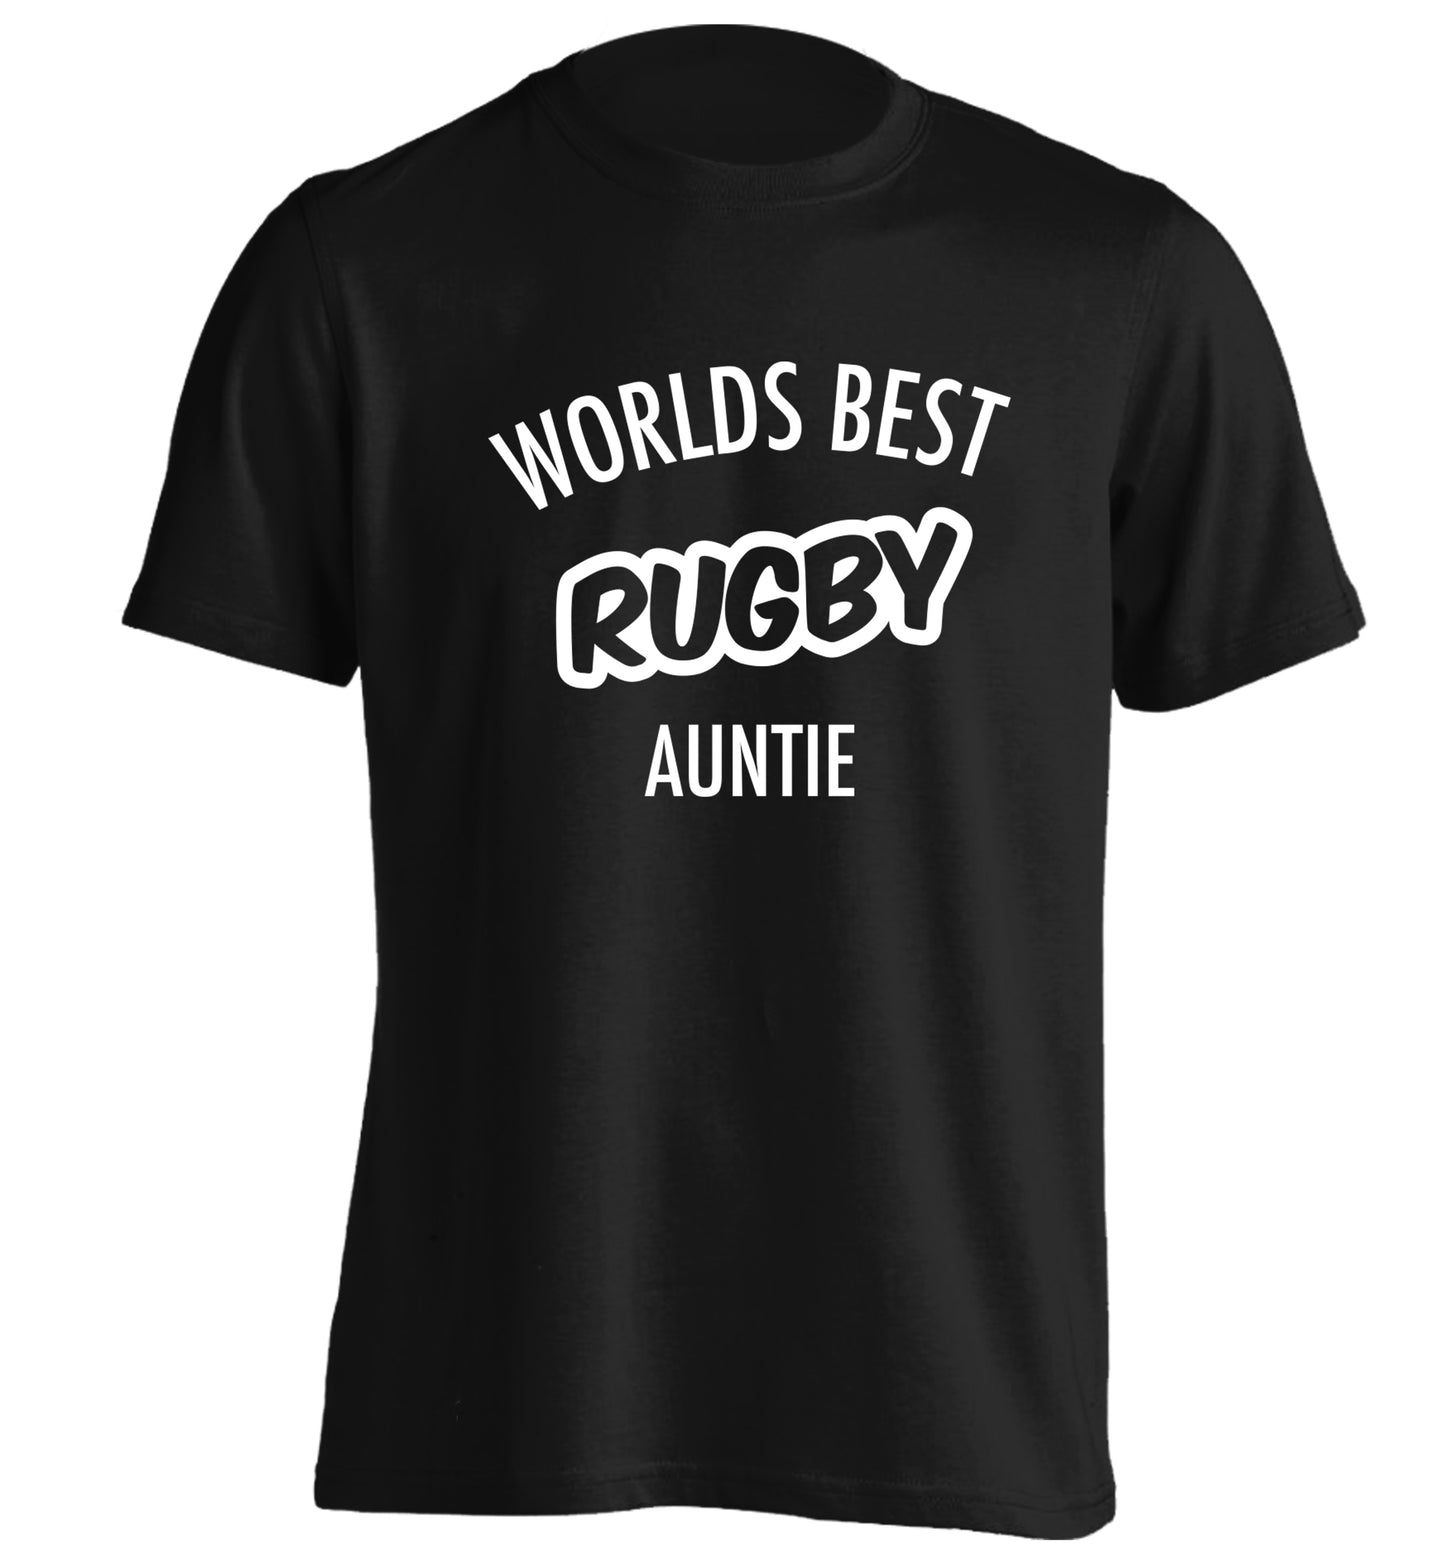 Worlds best rugby auntie adults unisex black Tshirt 2XL